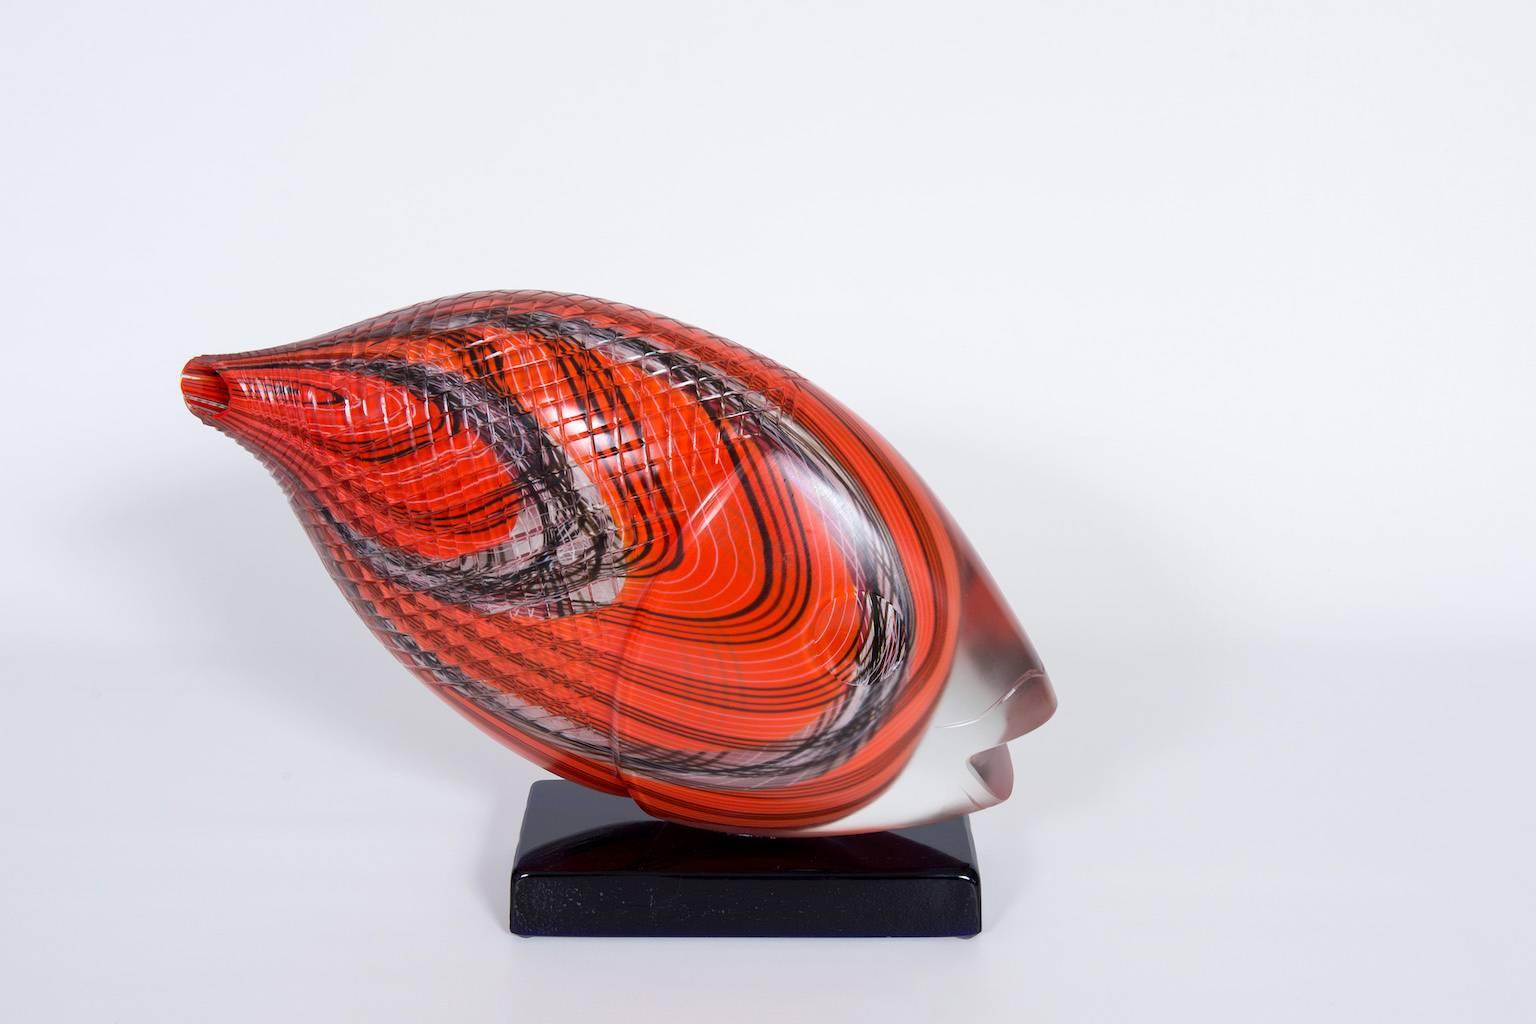 Étonnante sculpture vénitienne italienne, poisson, verre soufflé de Murano, rouge, opaque, noir, années 1990.
Cette étonnante sculpture est composée d'un socle noir tout en verre soufflé de Murano, où est logée la sculpture abstraite du poisson.
Le